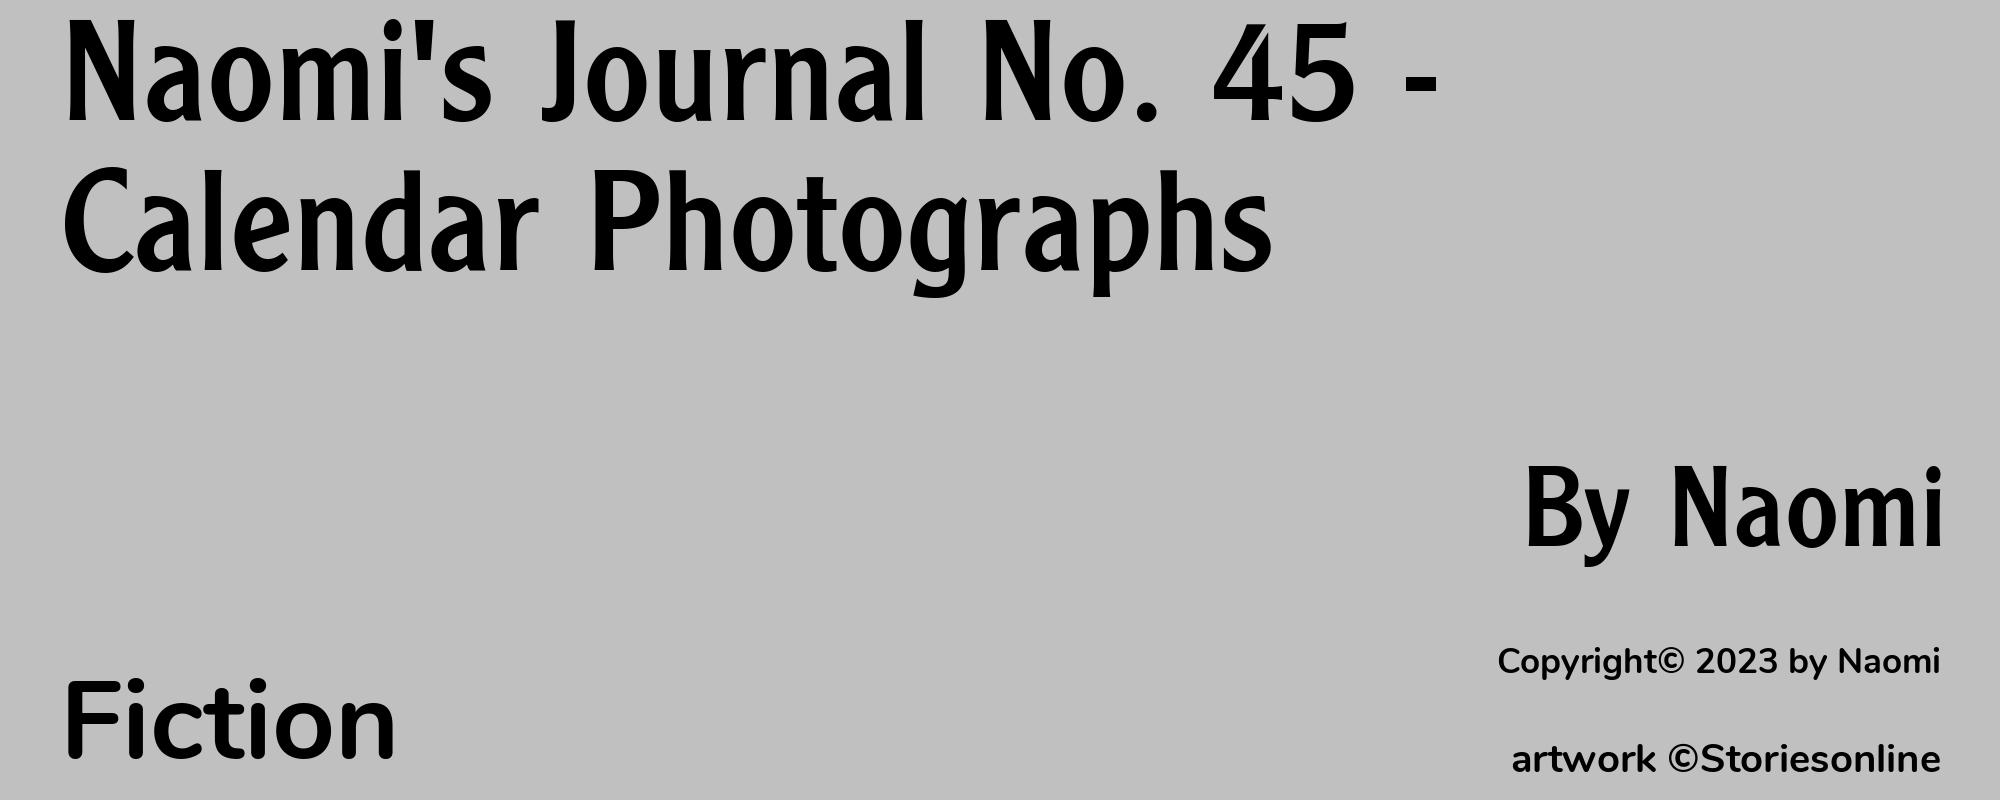 Naomi's Journal No. 45 - Calendar Photographs - Cover